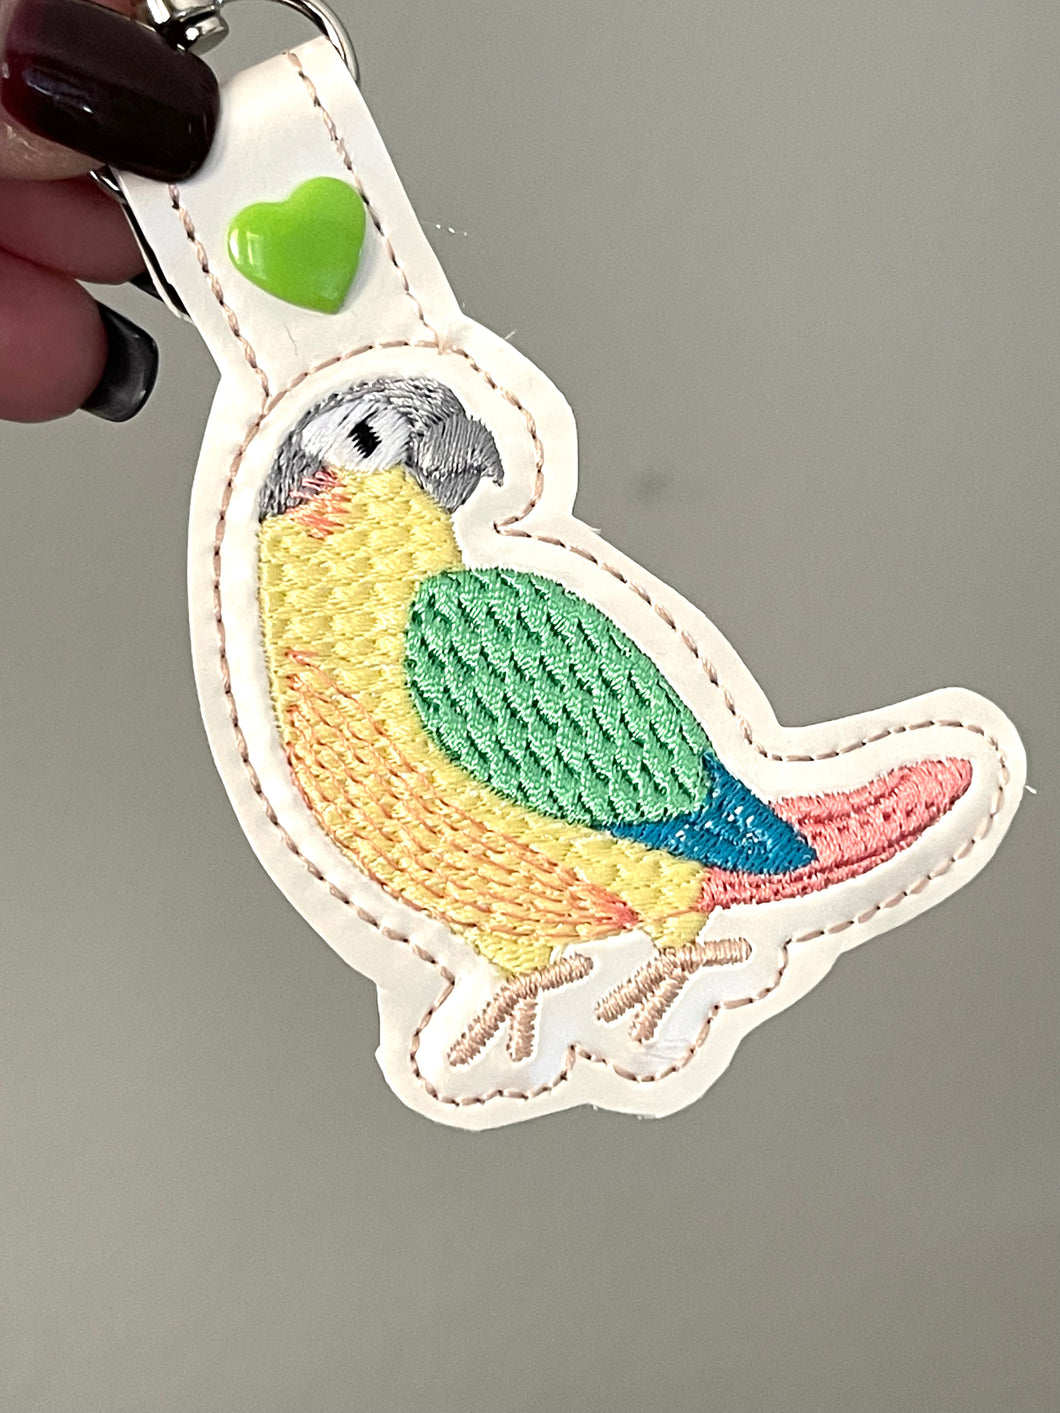 Green Cheek Conure Parakeet Snap Tab en el diseño de bordado del aro